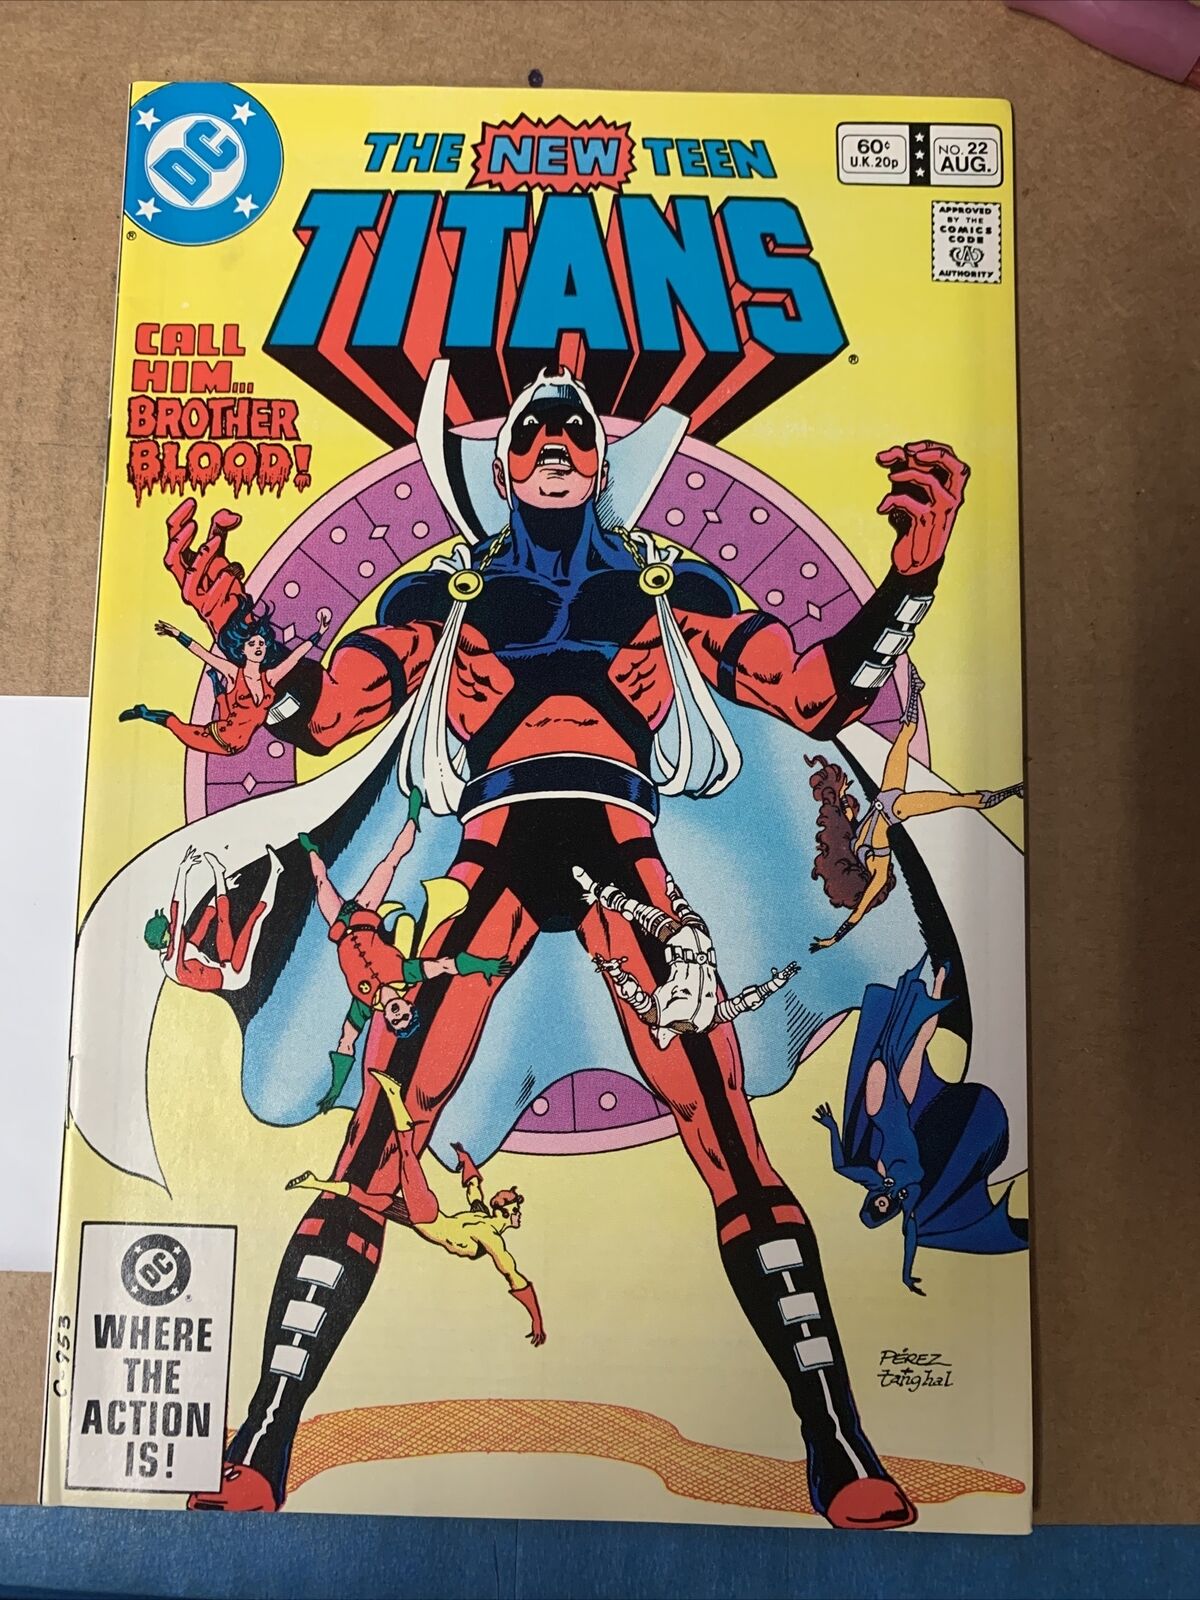 THE NEW TEEN TITANS Vol. 3 No. 22 (August 1982) DC Comics🔑